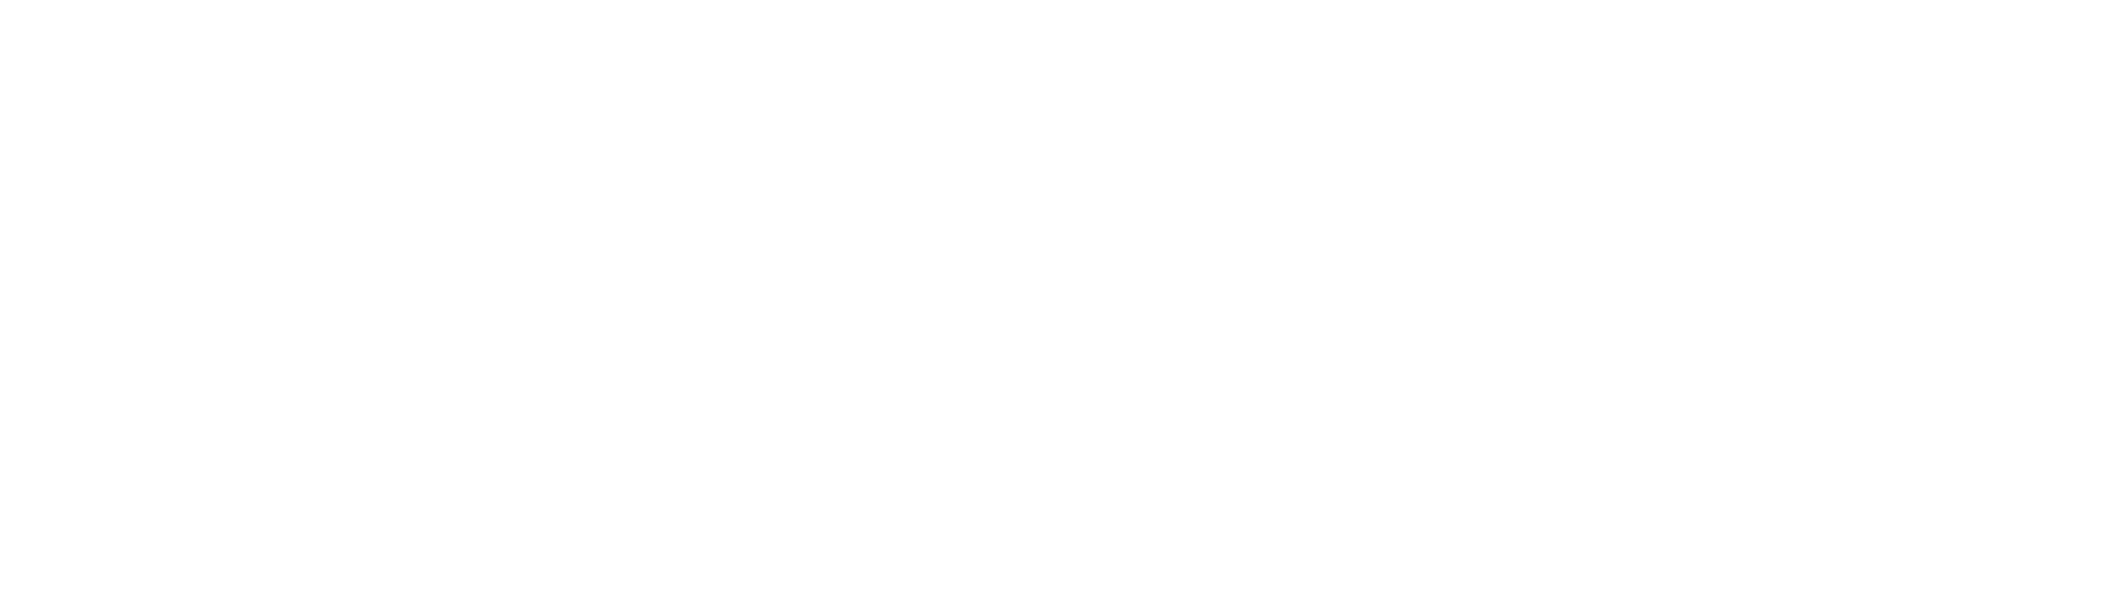 Wir bauen für Berlin - Die Landeseigenen